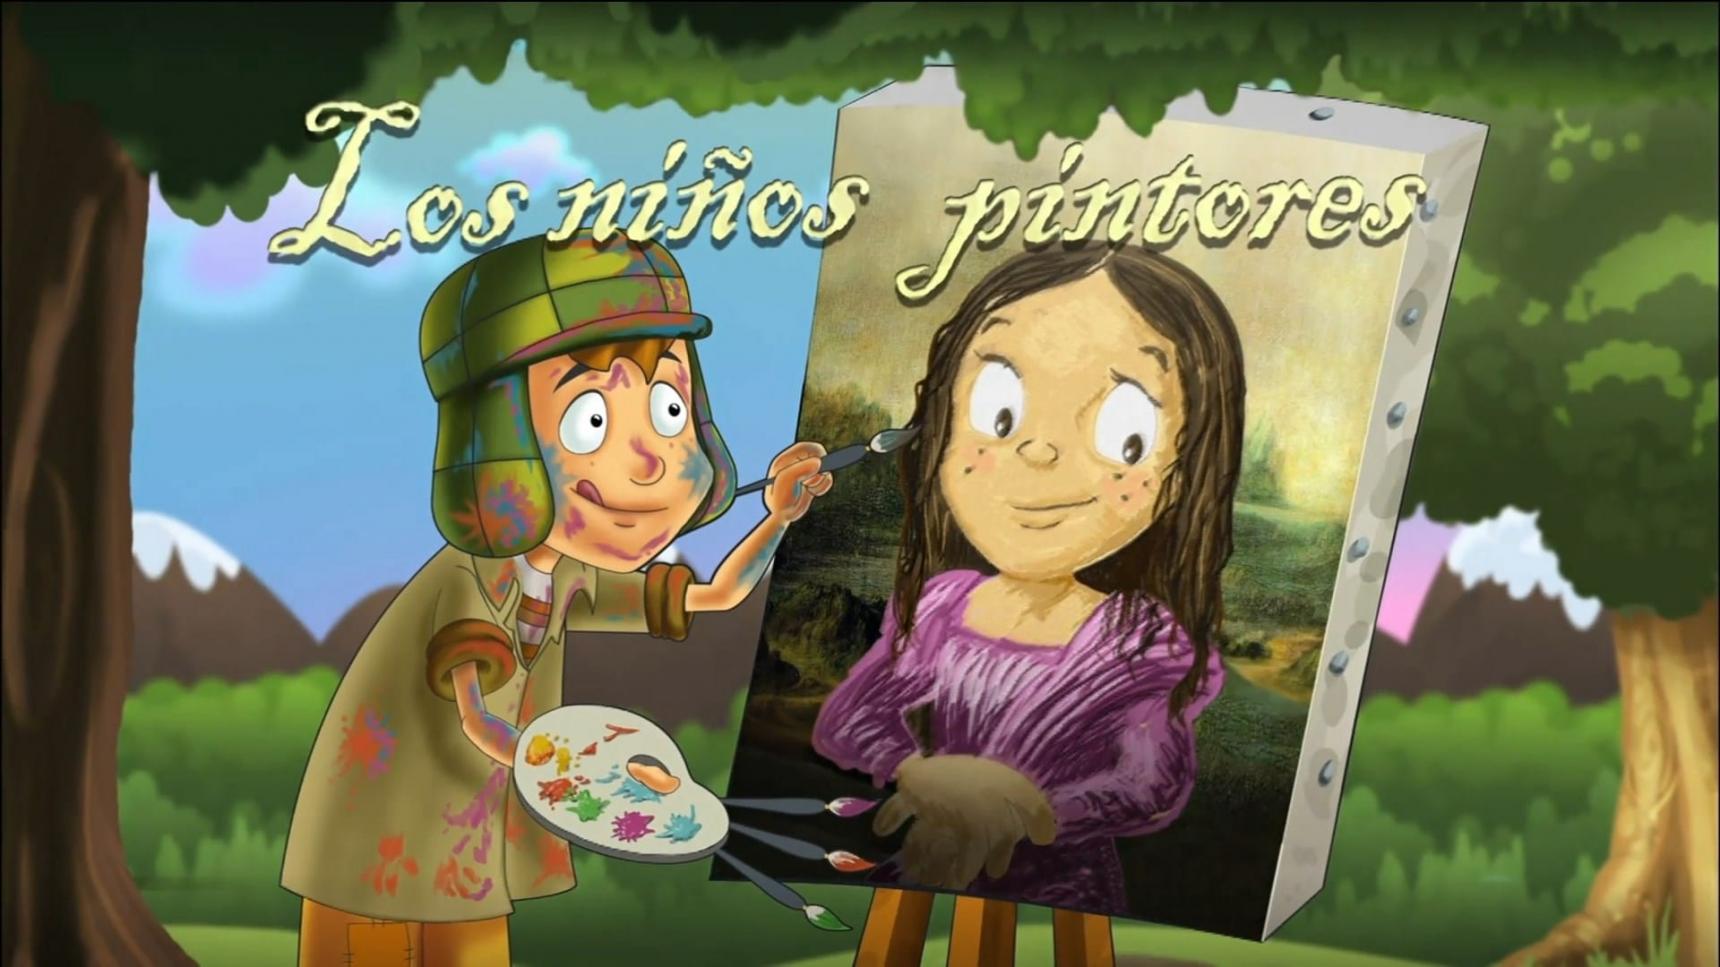 Poster del episodio 20 de El Chavo animado online